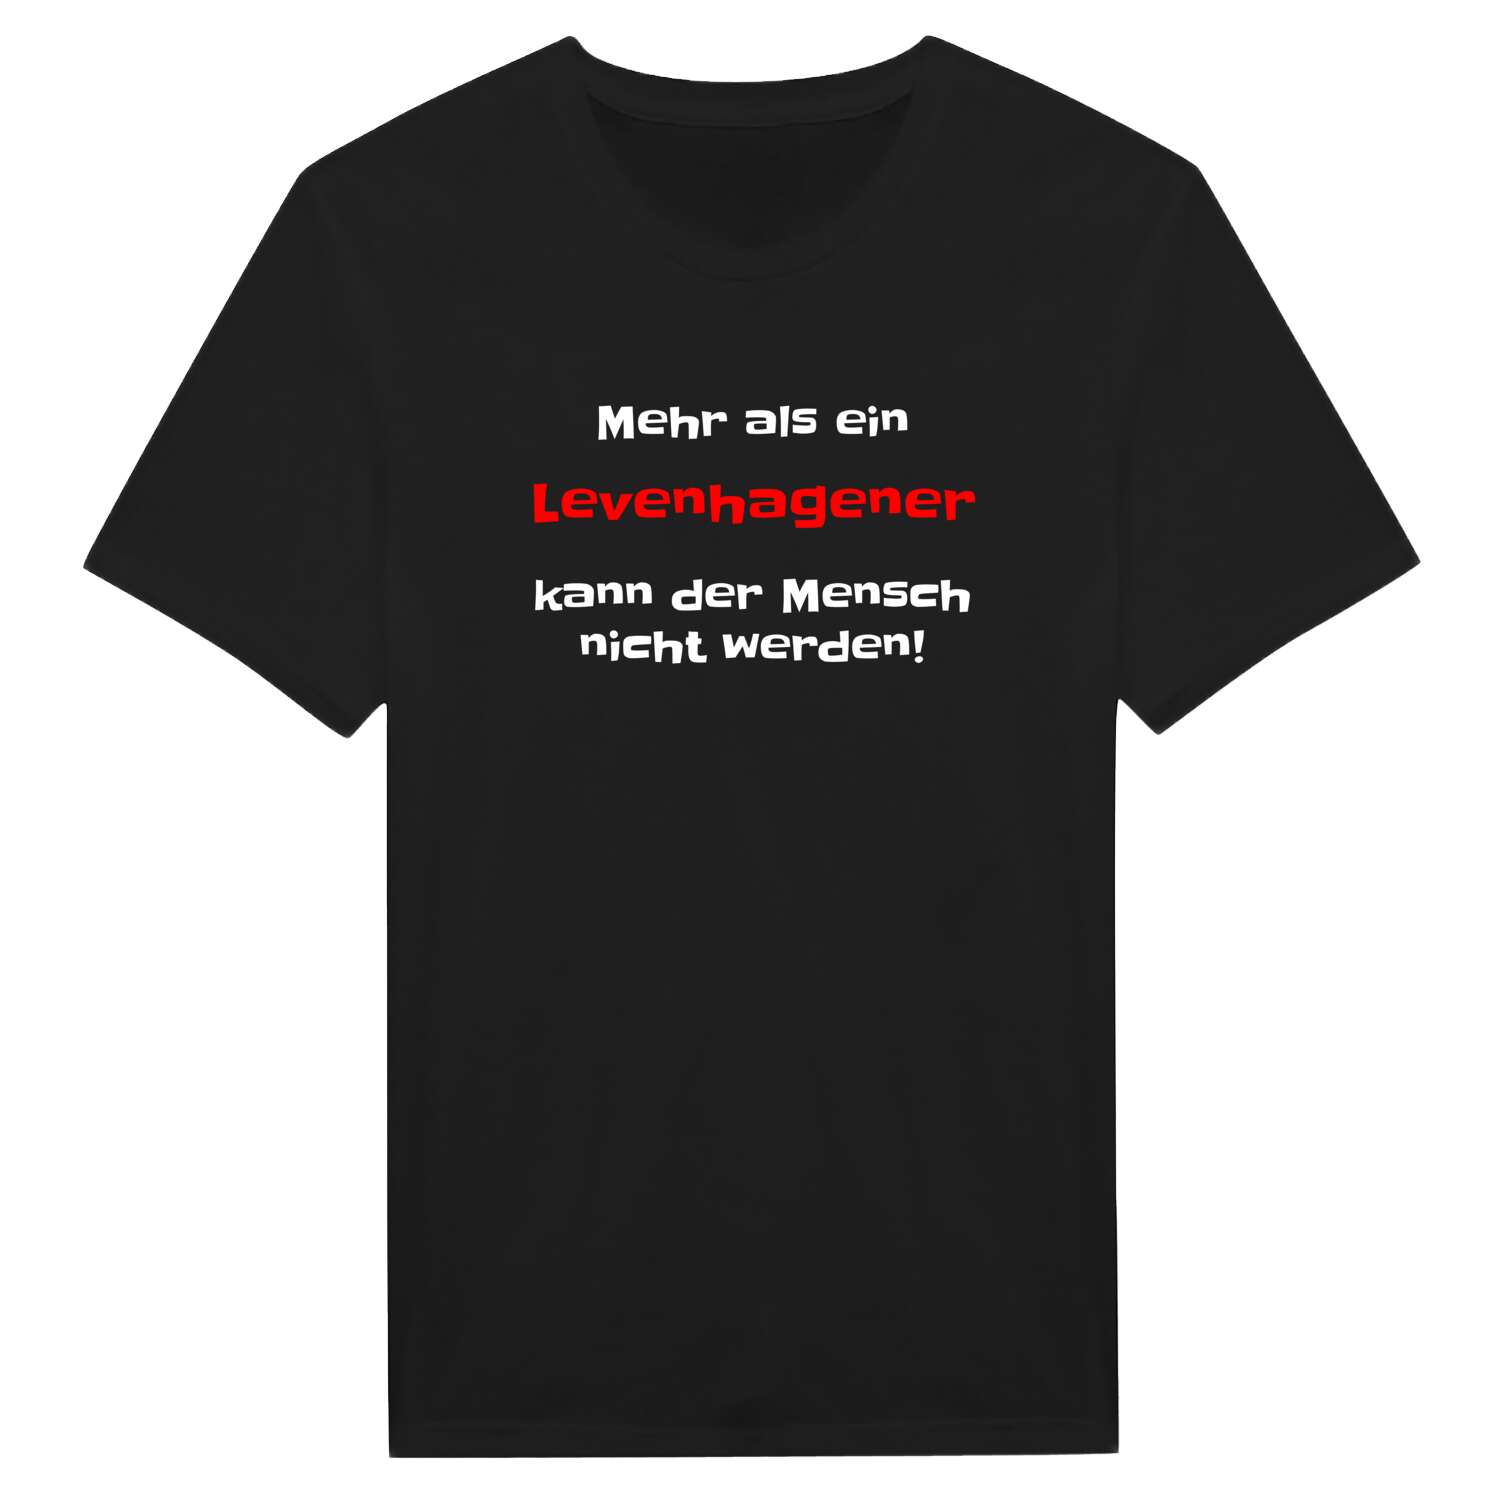 Levenhagen T-Shirt »Mehr als ein«